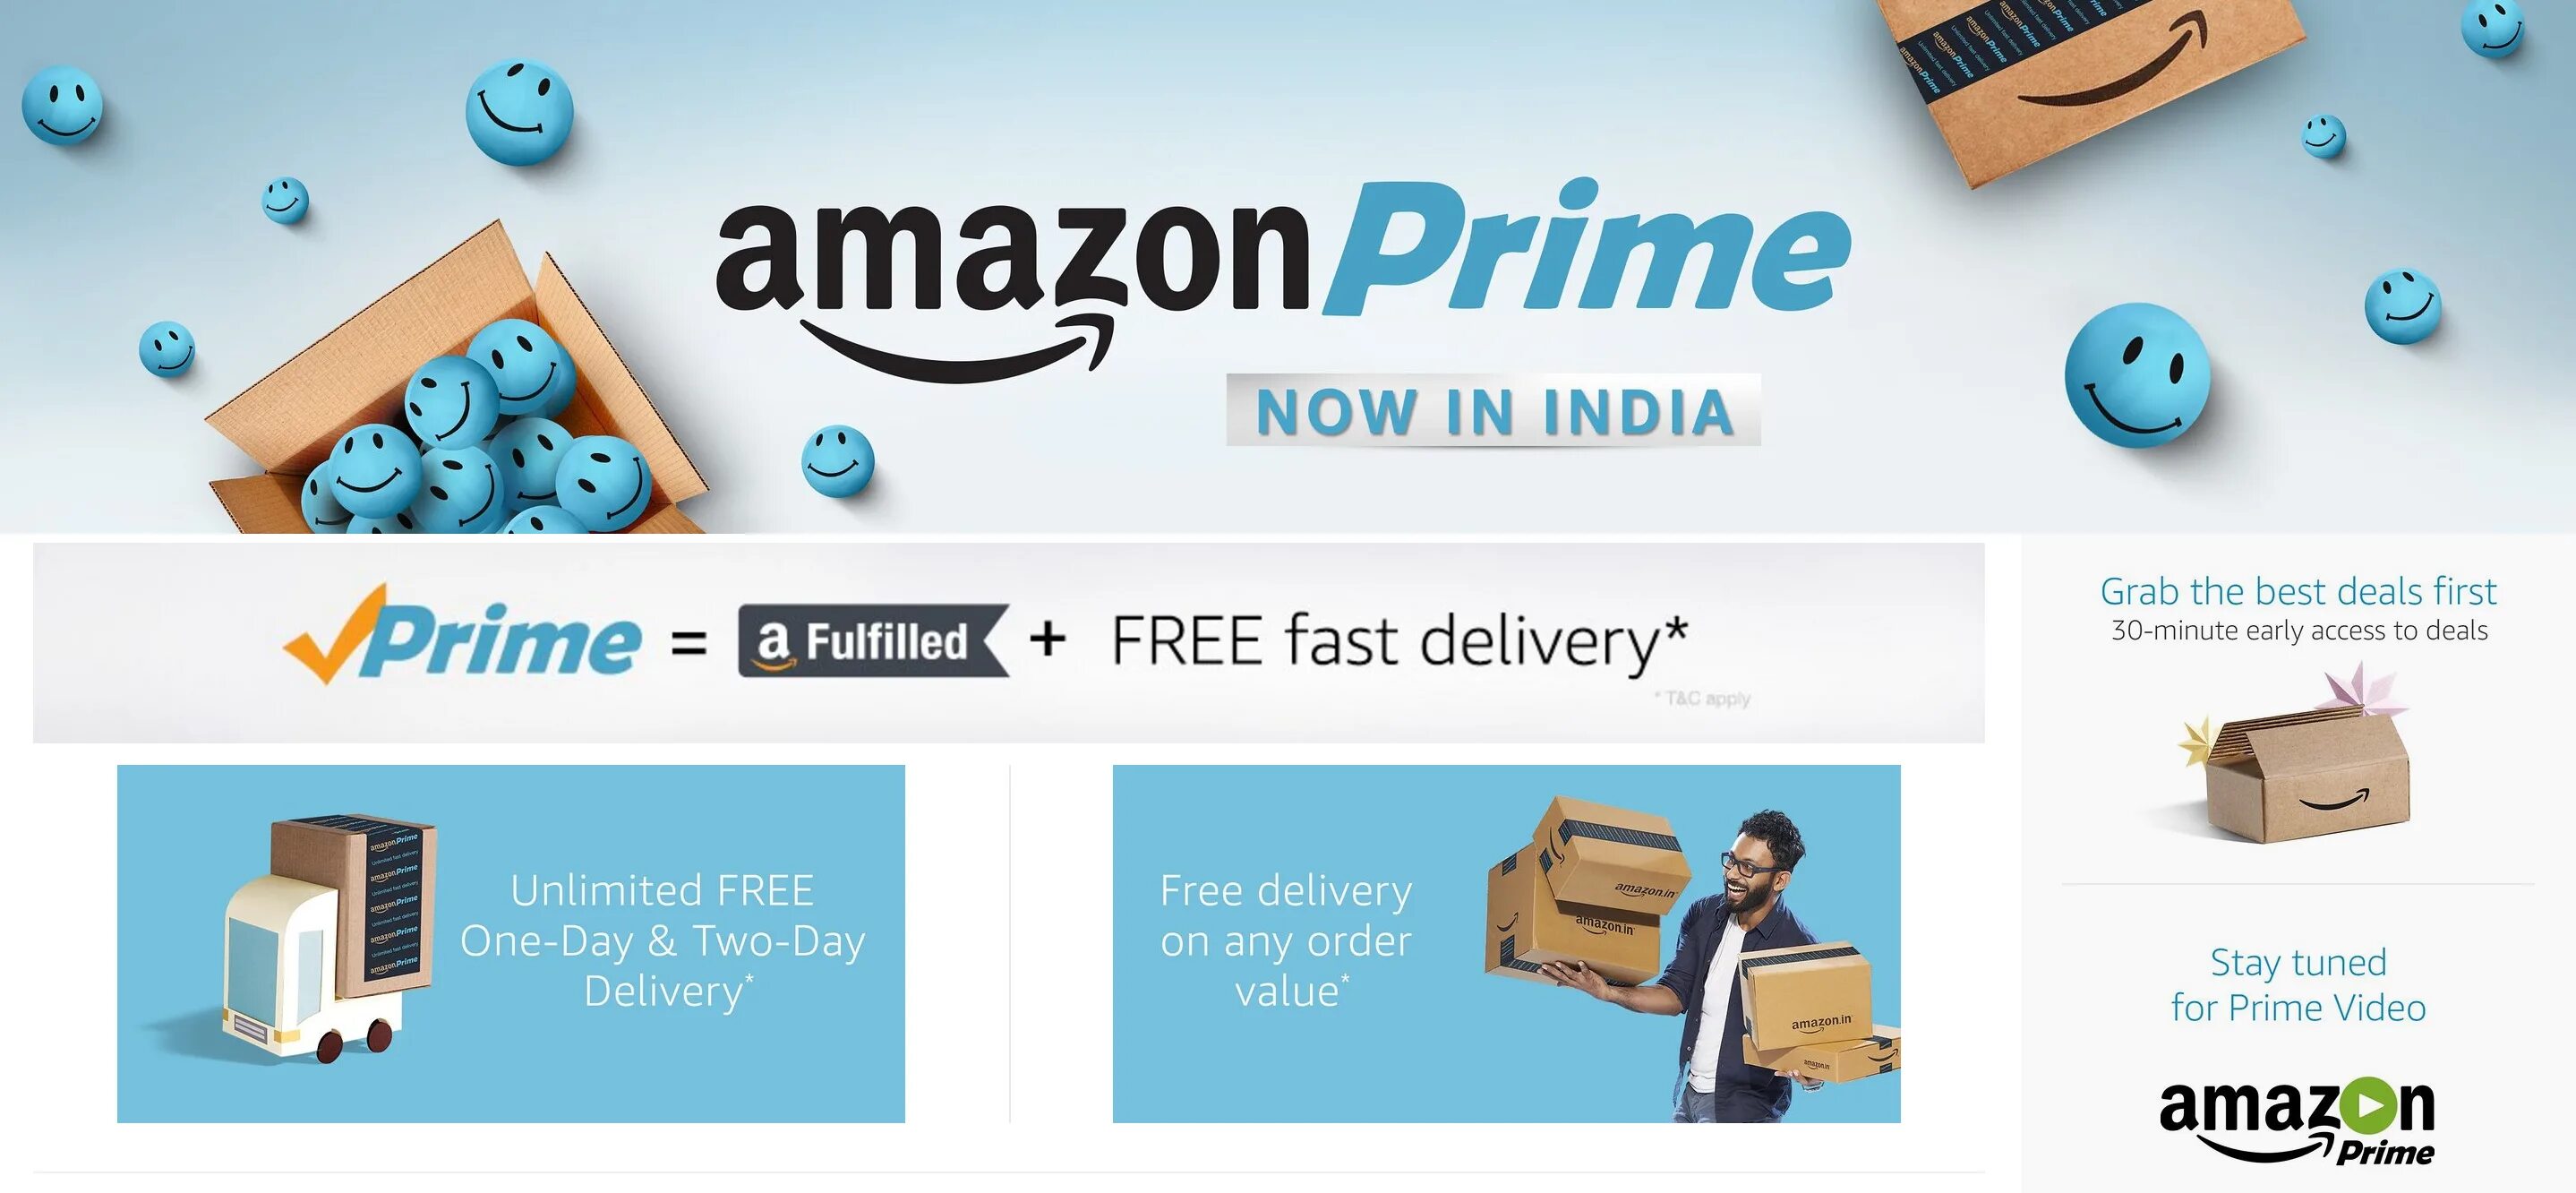 Amazon prime купить. Amazon Prime. Amazon Прайм. Amazon Prime услуги.